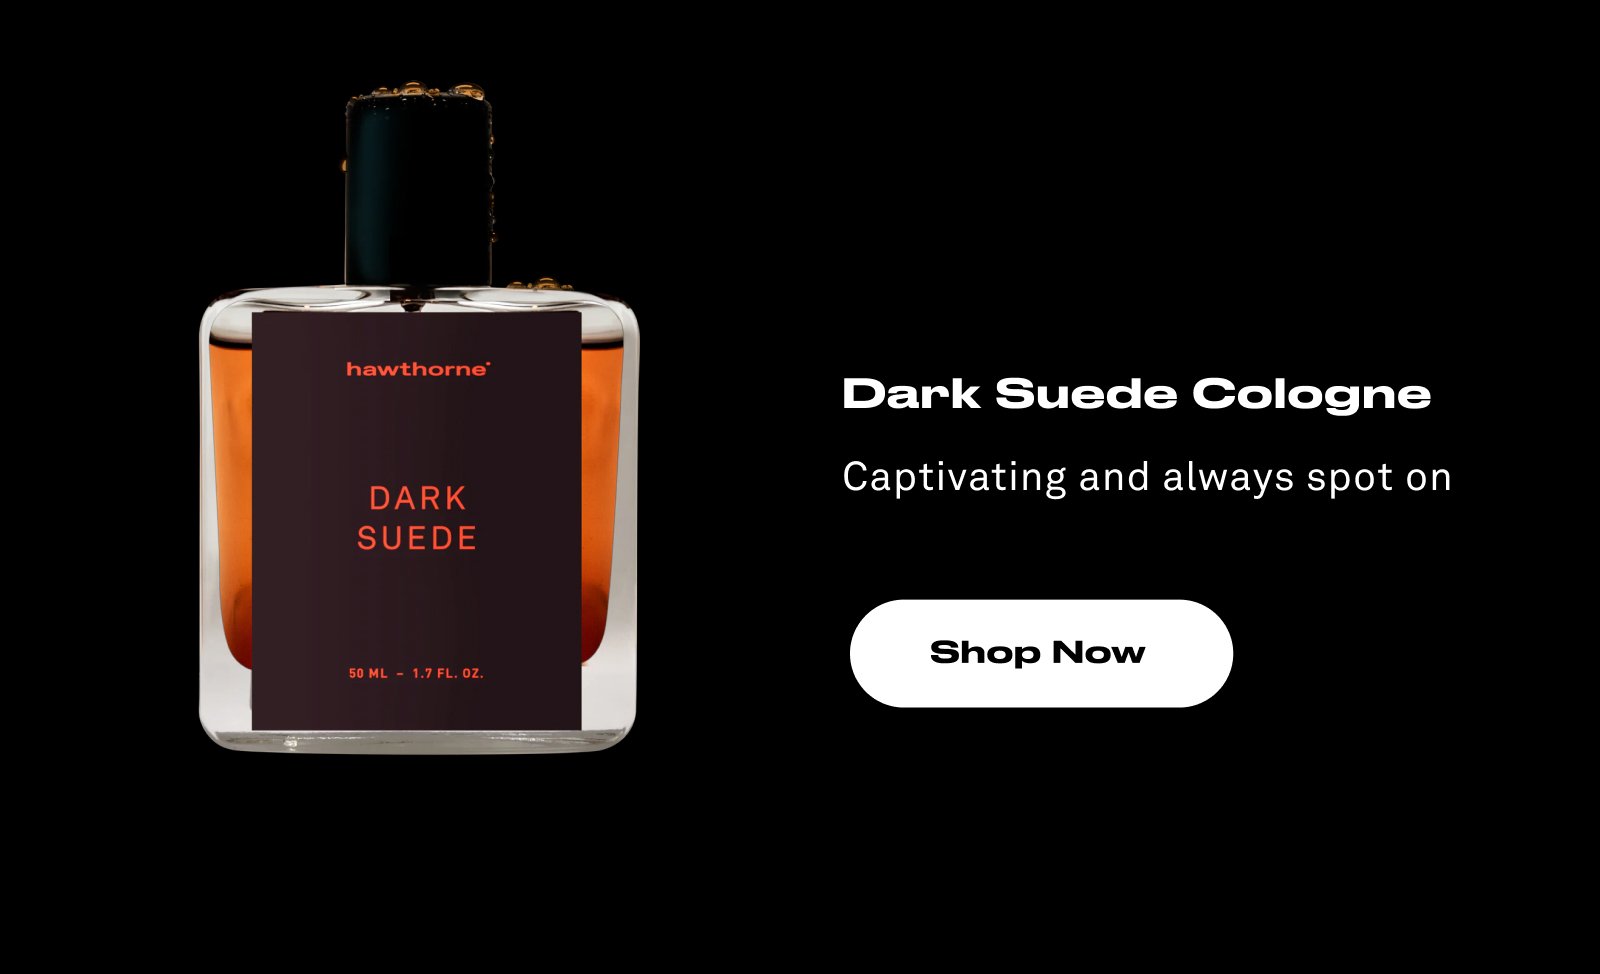 Dark Suede Cologne